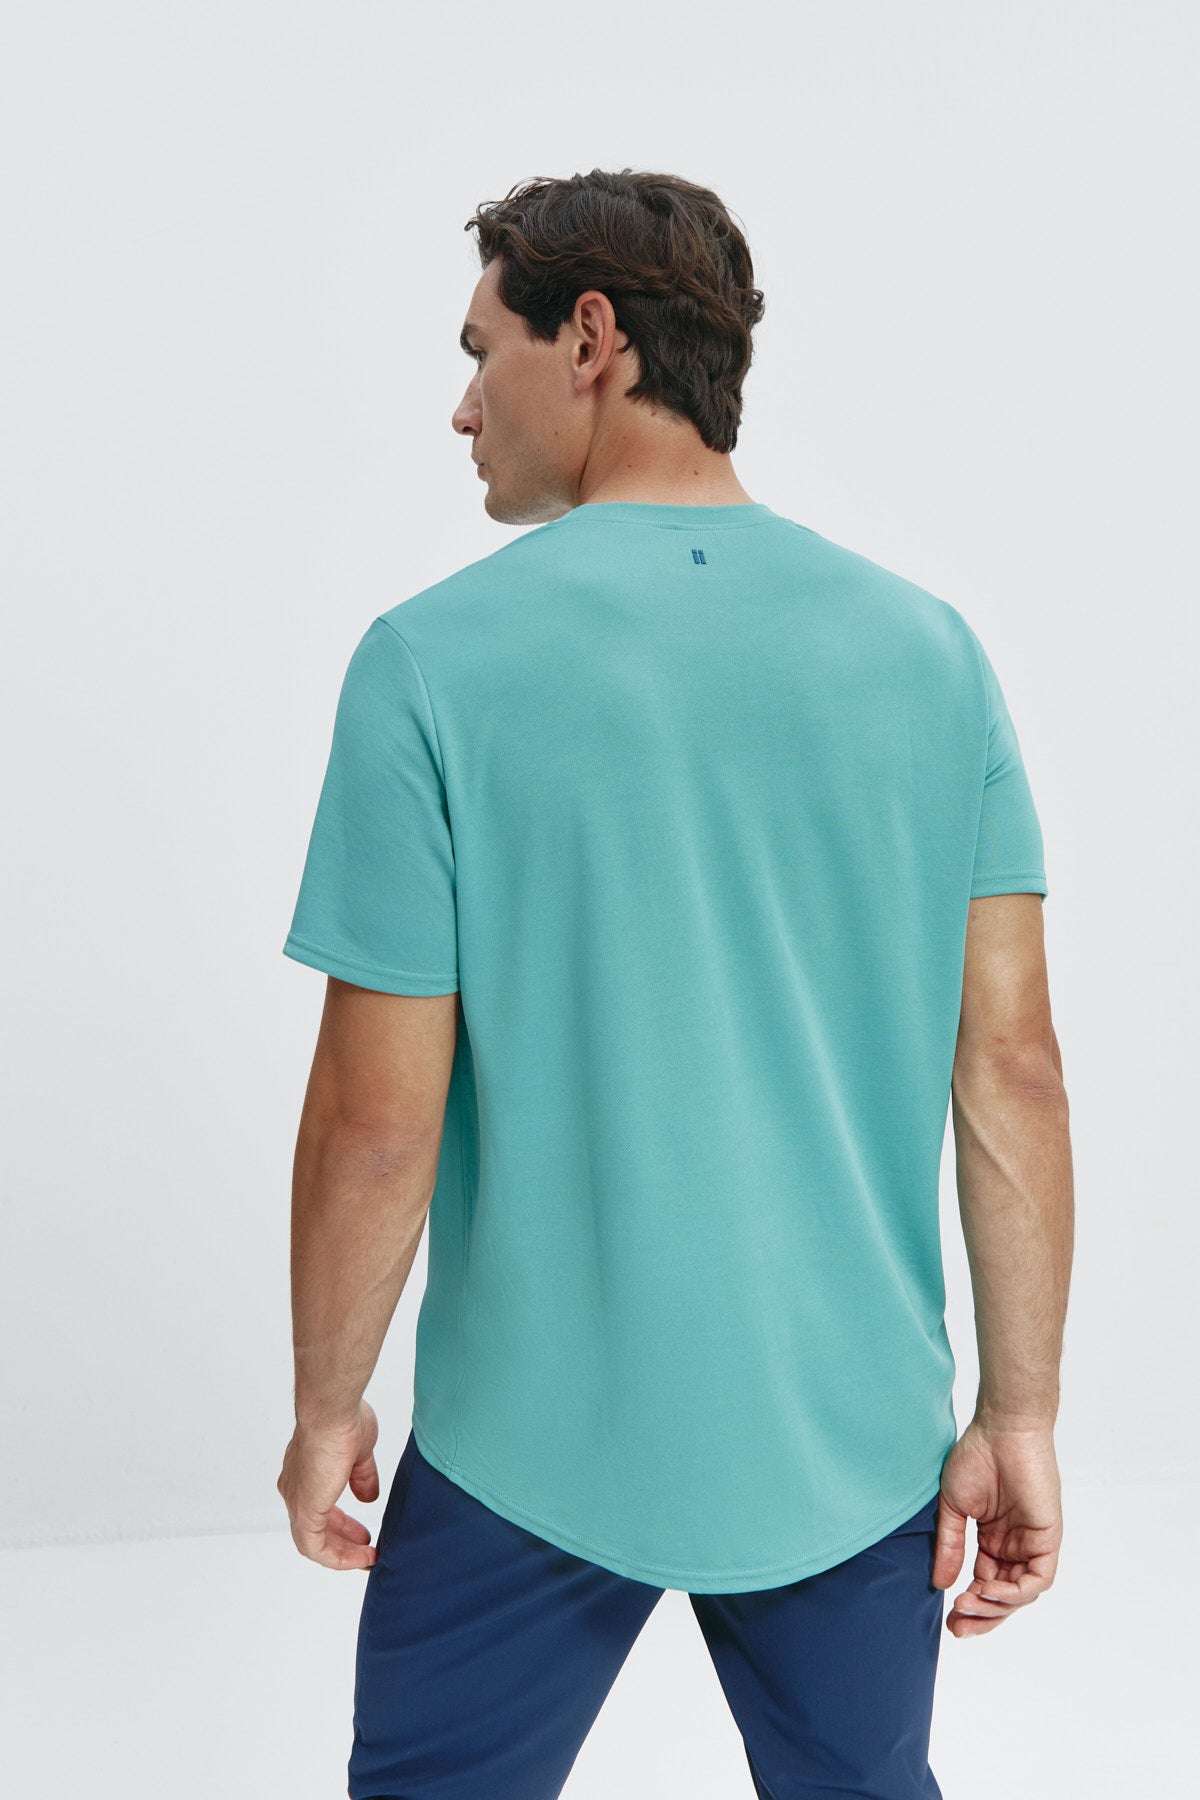 Camiseta de hombre verde clorofila de Sepiia, estilo y versatilidad en una prenda resistente. Foto espalda